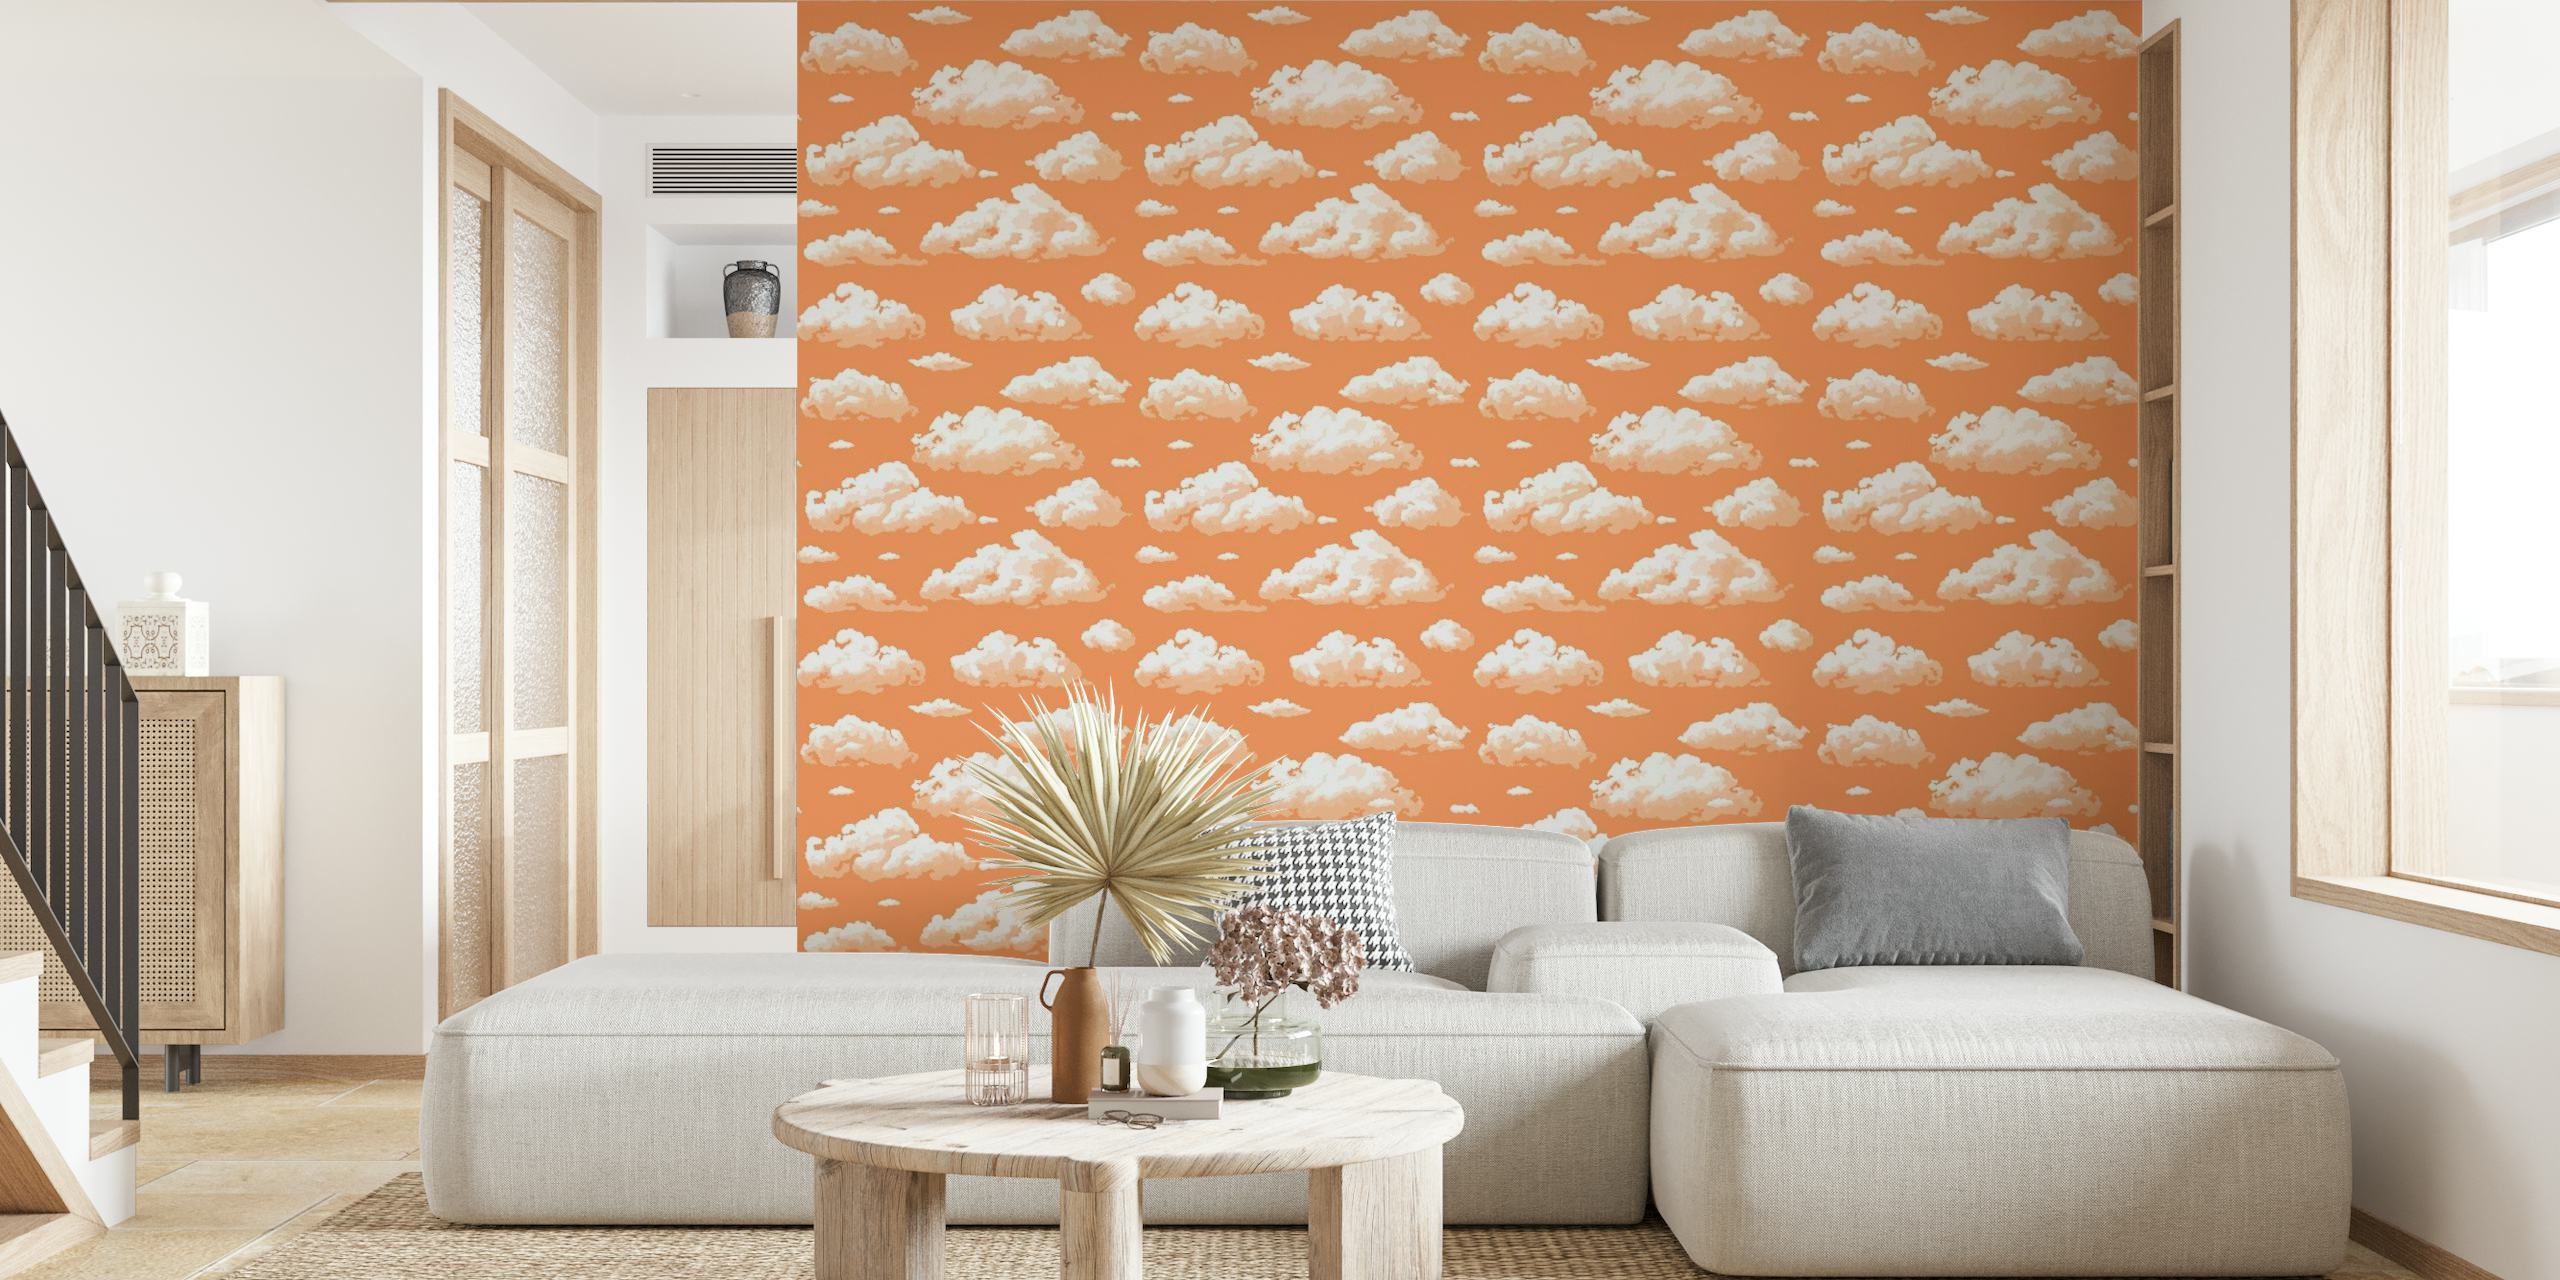 Ripetute soffici nuvole bianche su un caldo murale con sfondo color pesca